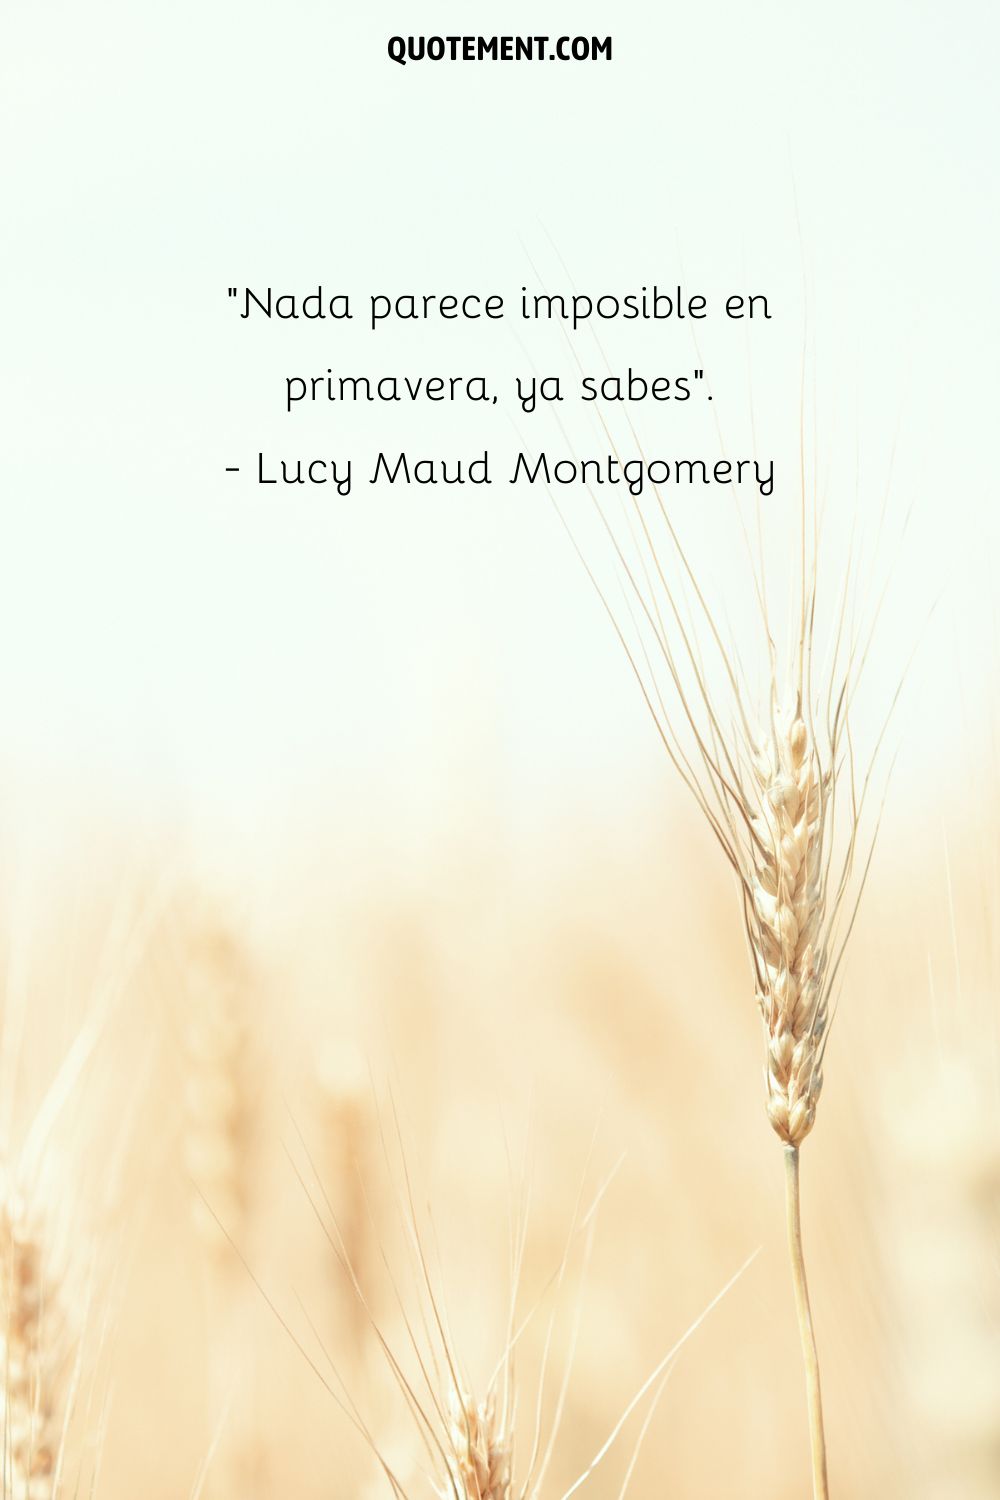 Nada parece imposible en primavera. - Lucy Maud Montgomery